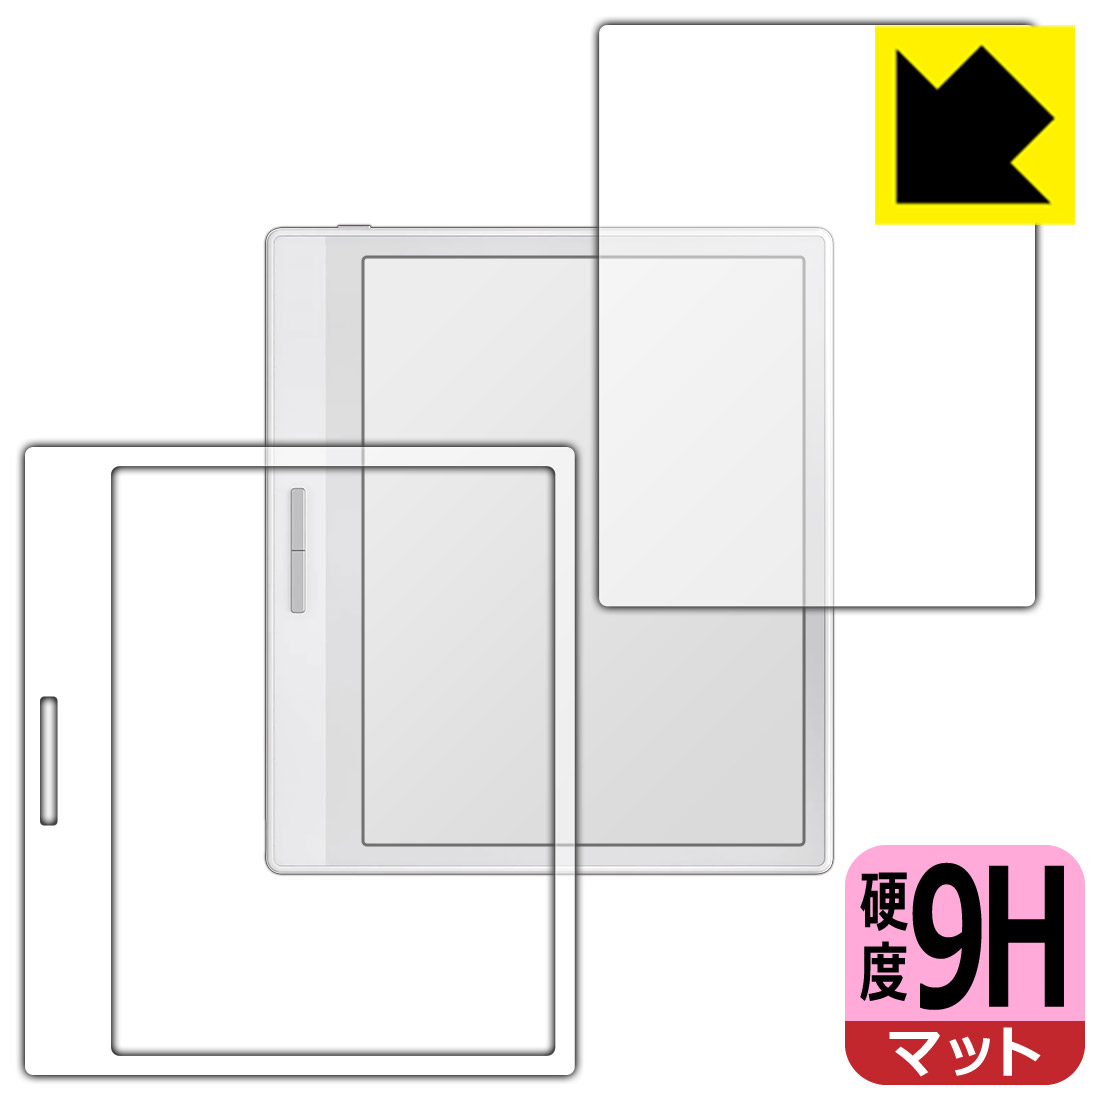 9H高硬度【反射低減】保護フィルム Onyx BOOX Leaf2 【ホワイトモデル用】 日本製 自社製造直販